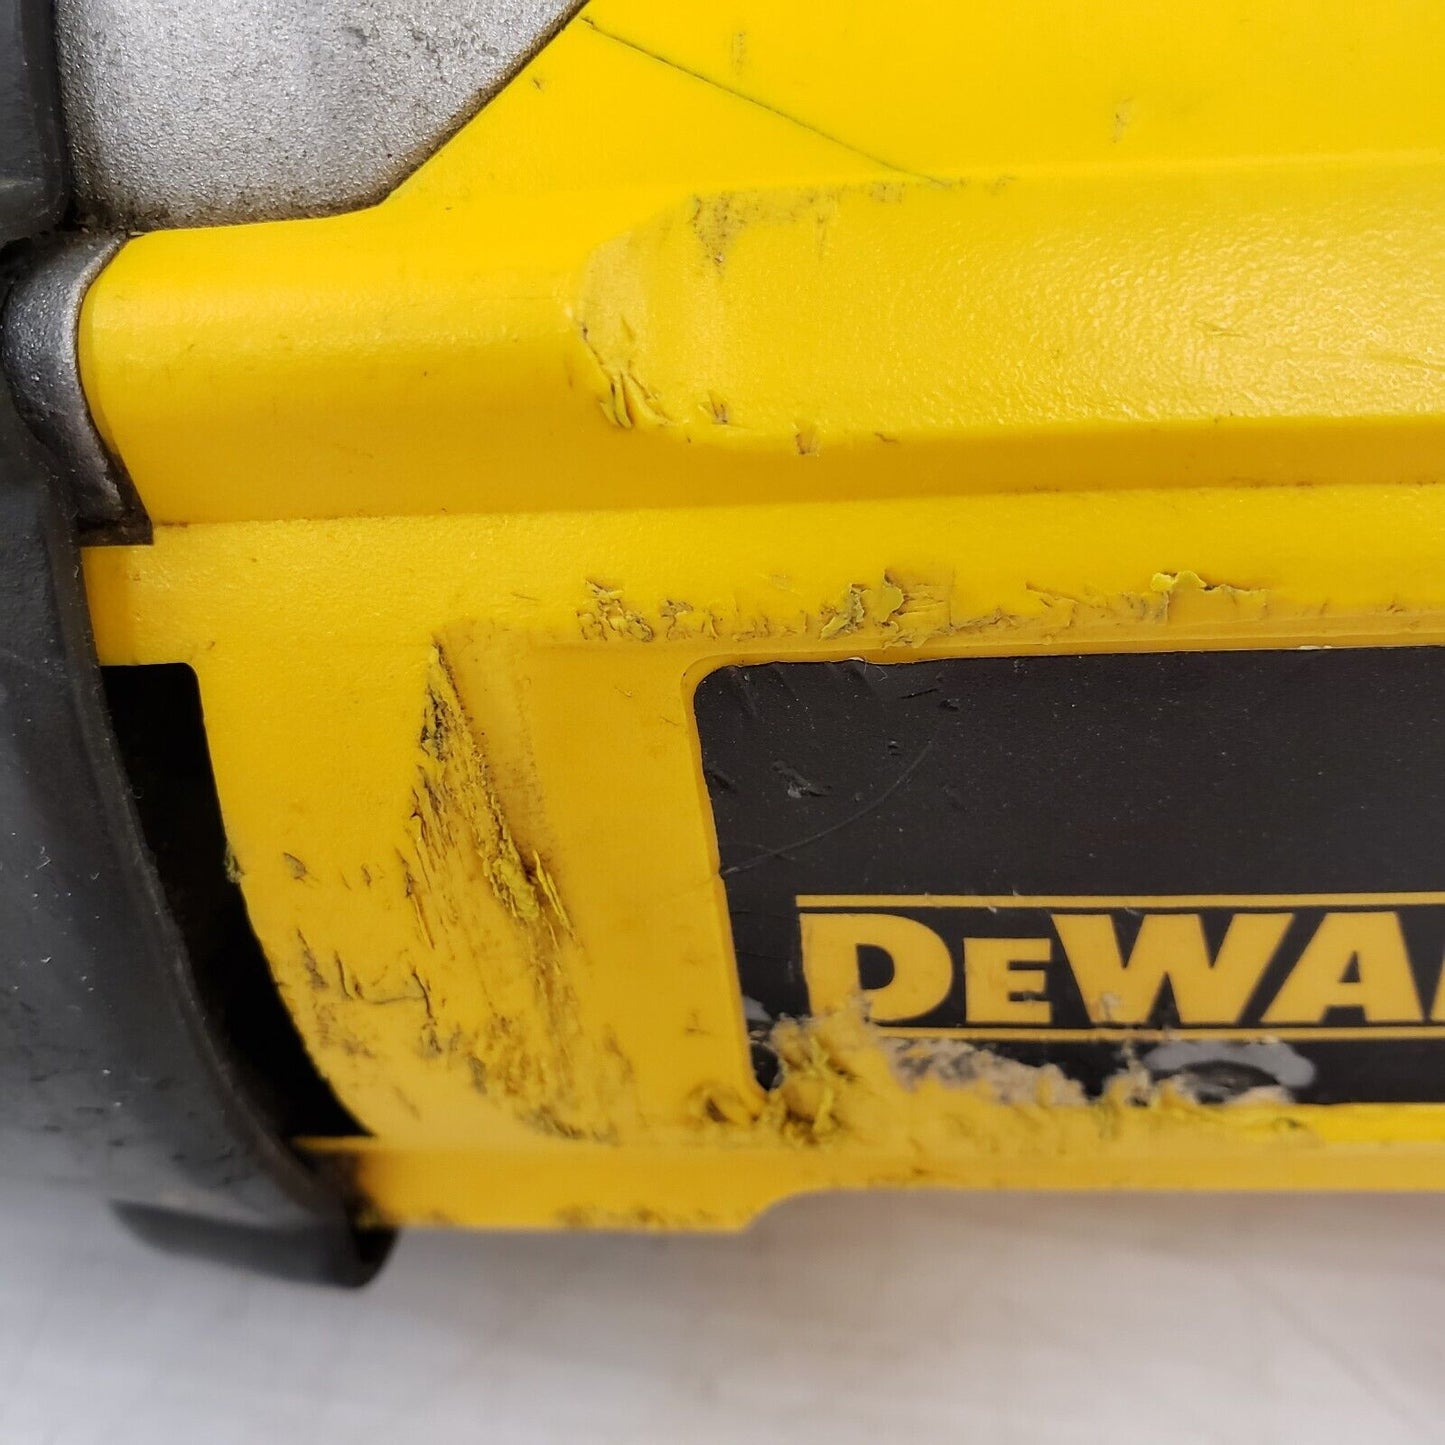 (10167-5) Dewalt DC305 Reciprocating Saw